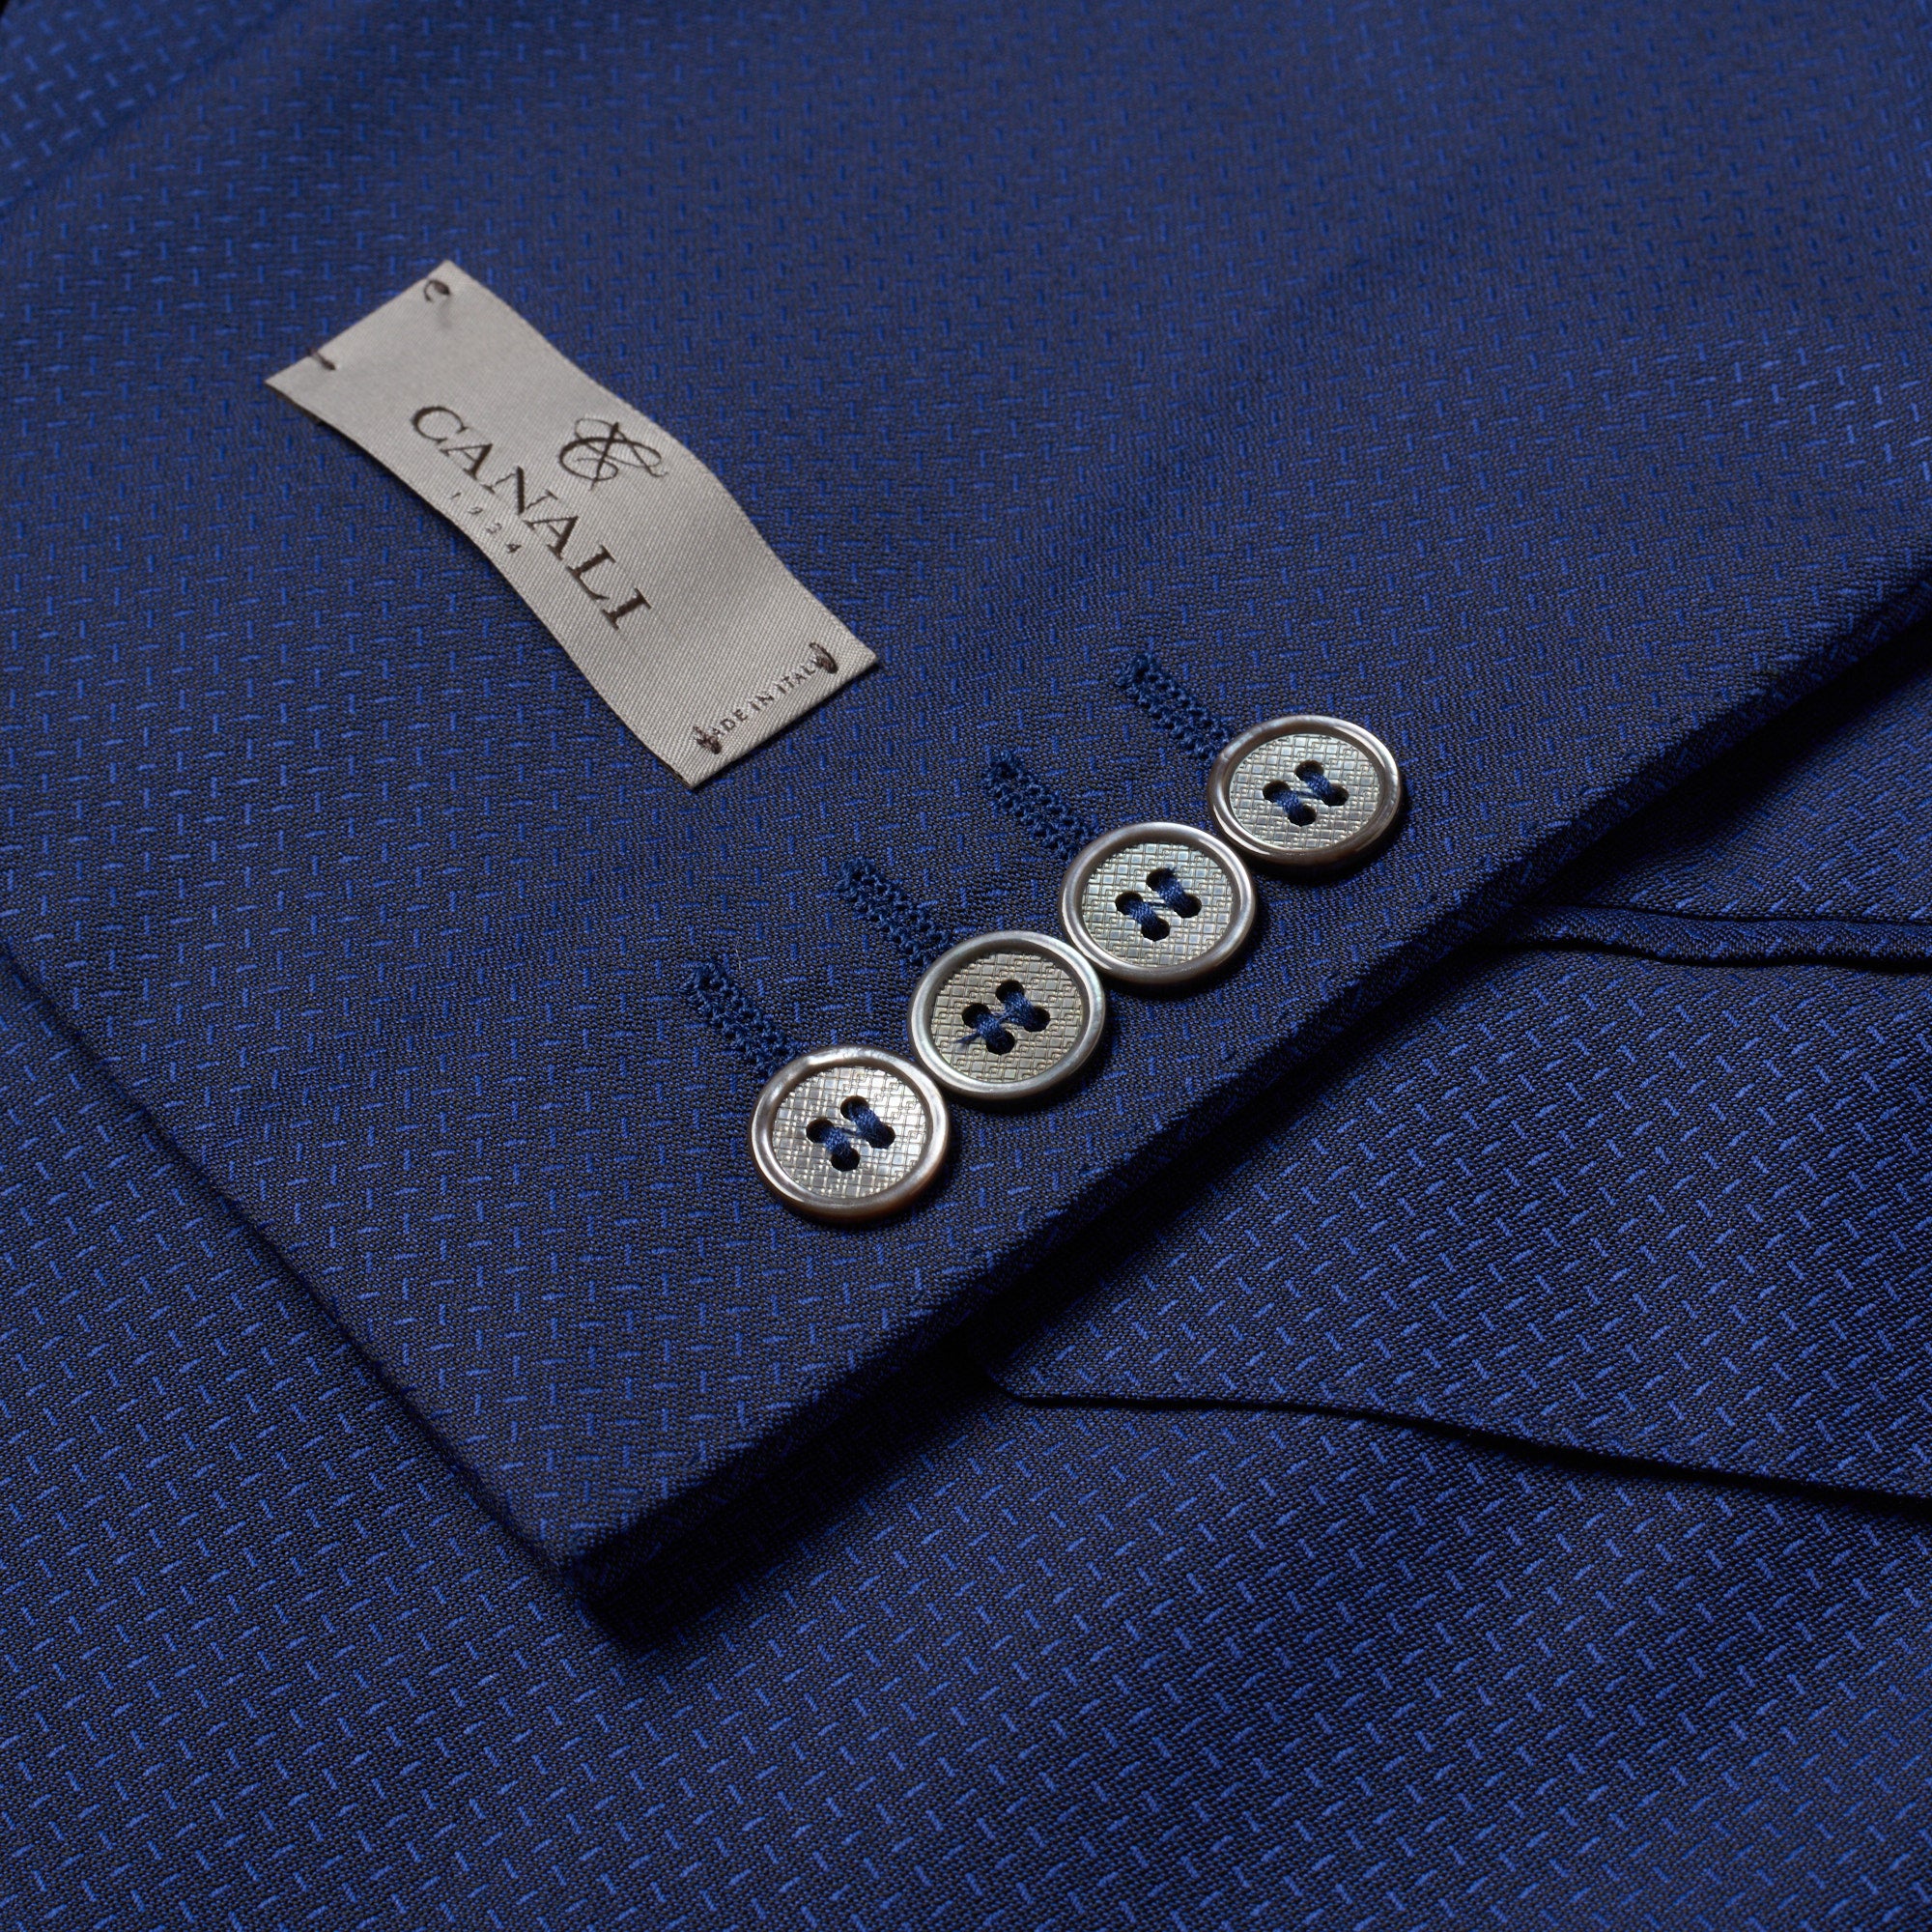 CANALI 1934 Blue Jacquard Wool Suit EU 50 NEW US 40 Regular Slim Fit Cut CANALI